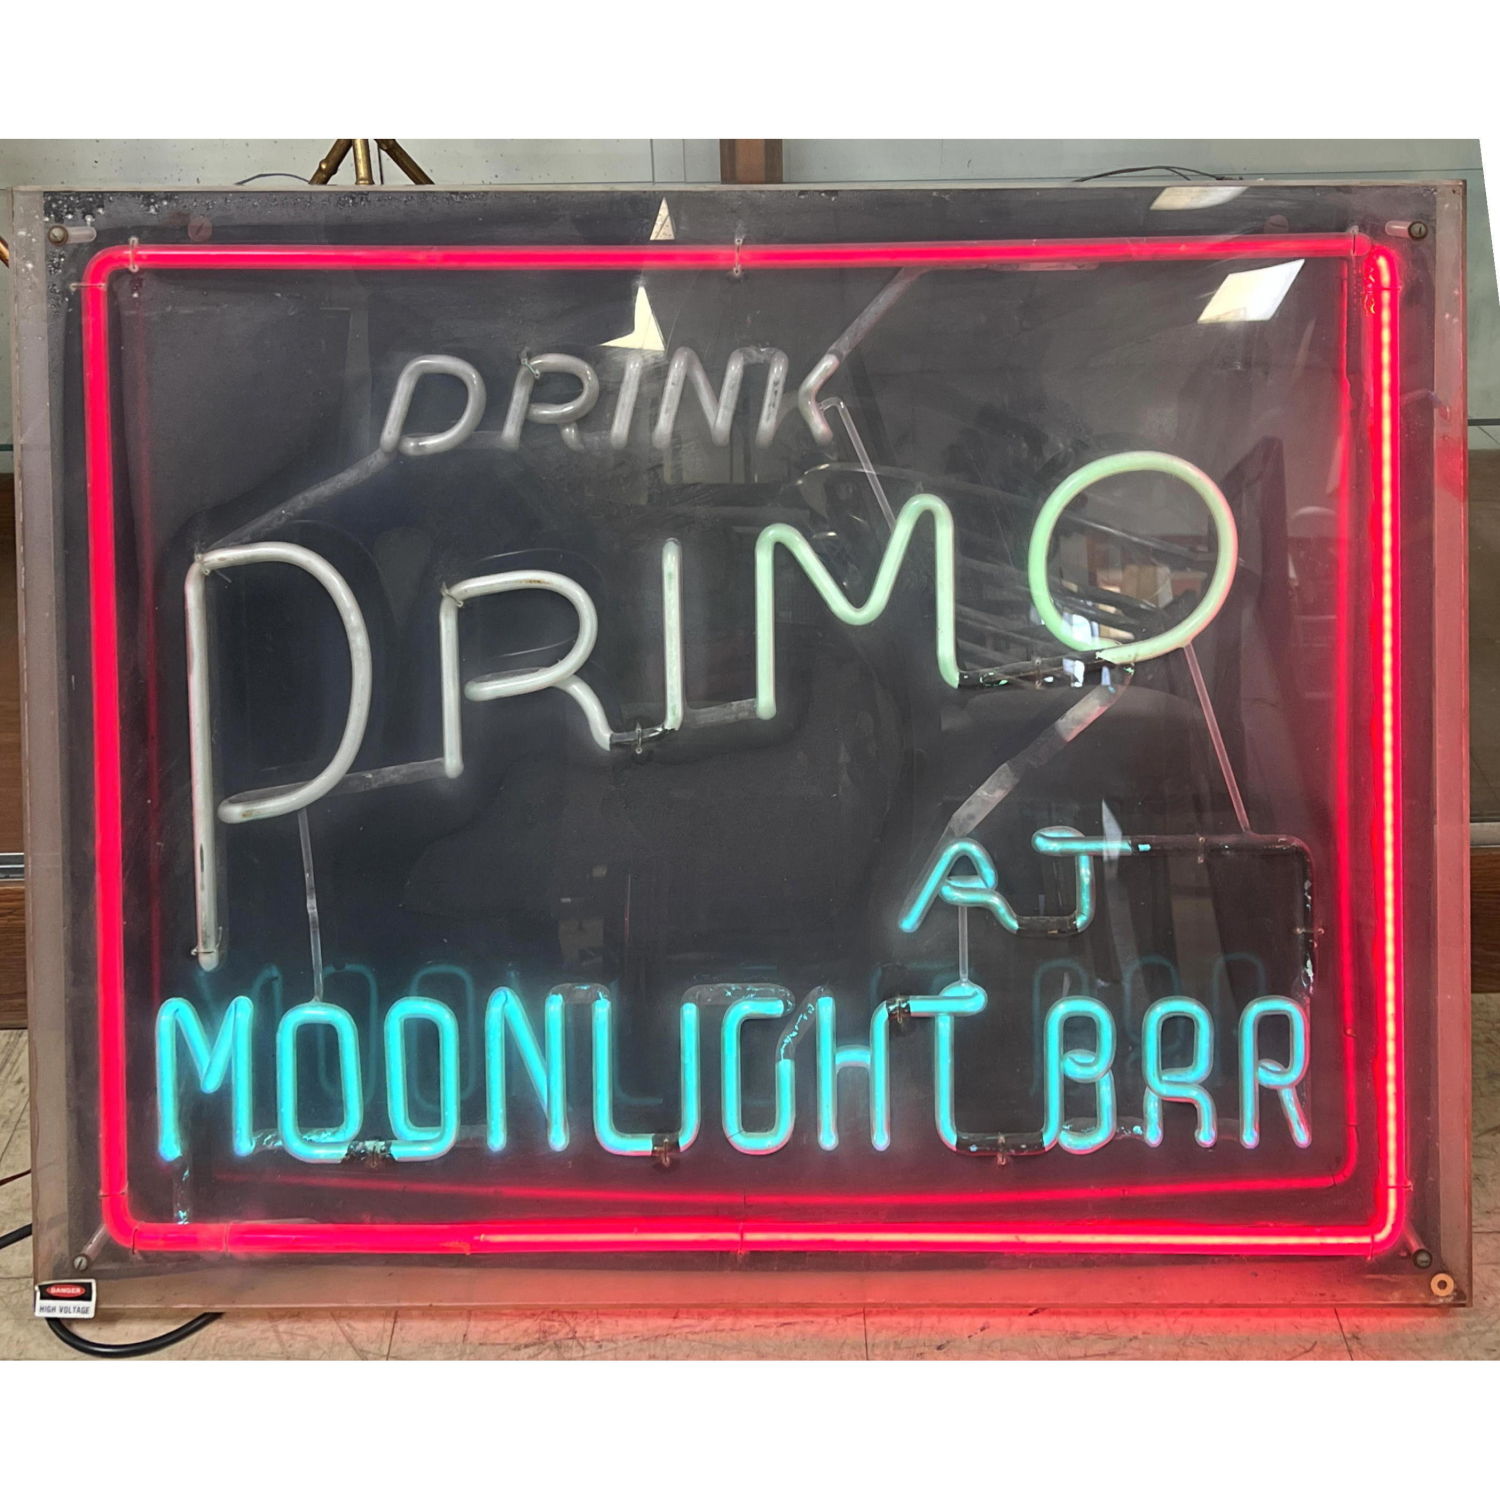 Vintage Neon Bar Sign. "Drink PRIMO